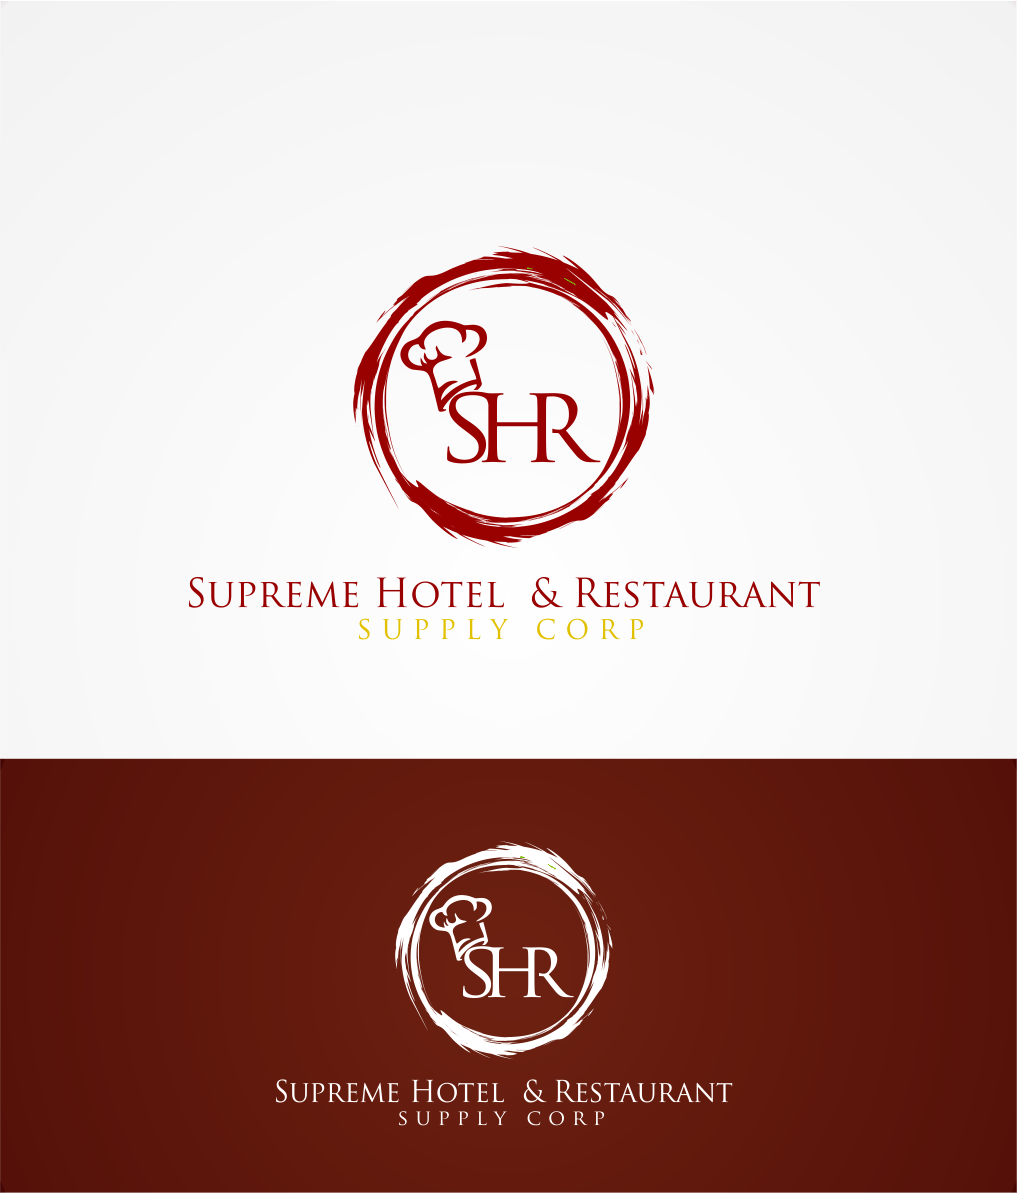 Supreme Corp Logo - Modern, Playful, Business Logo Design for Supreme Hotel & Restaurant